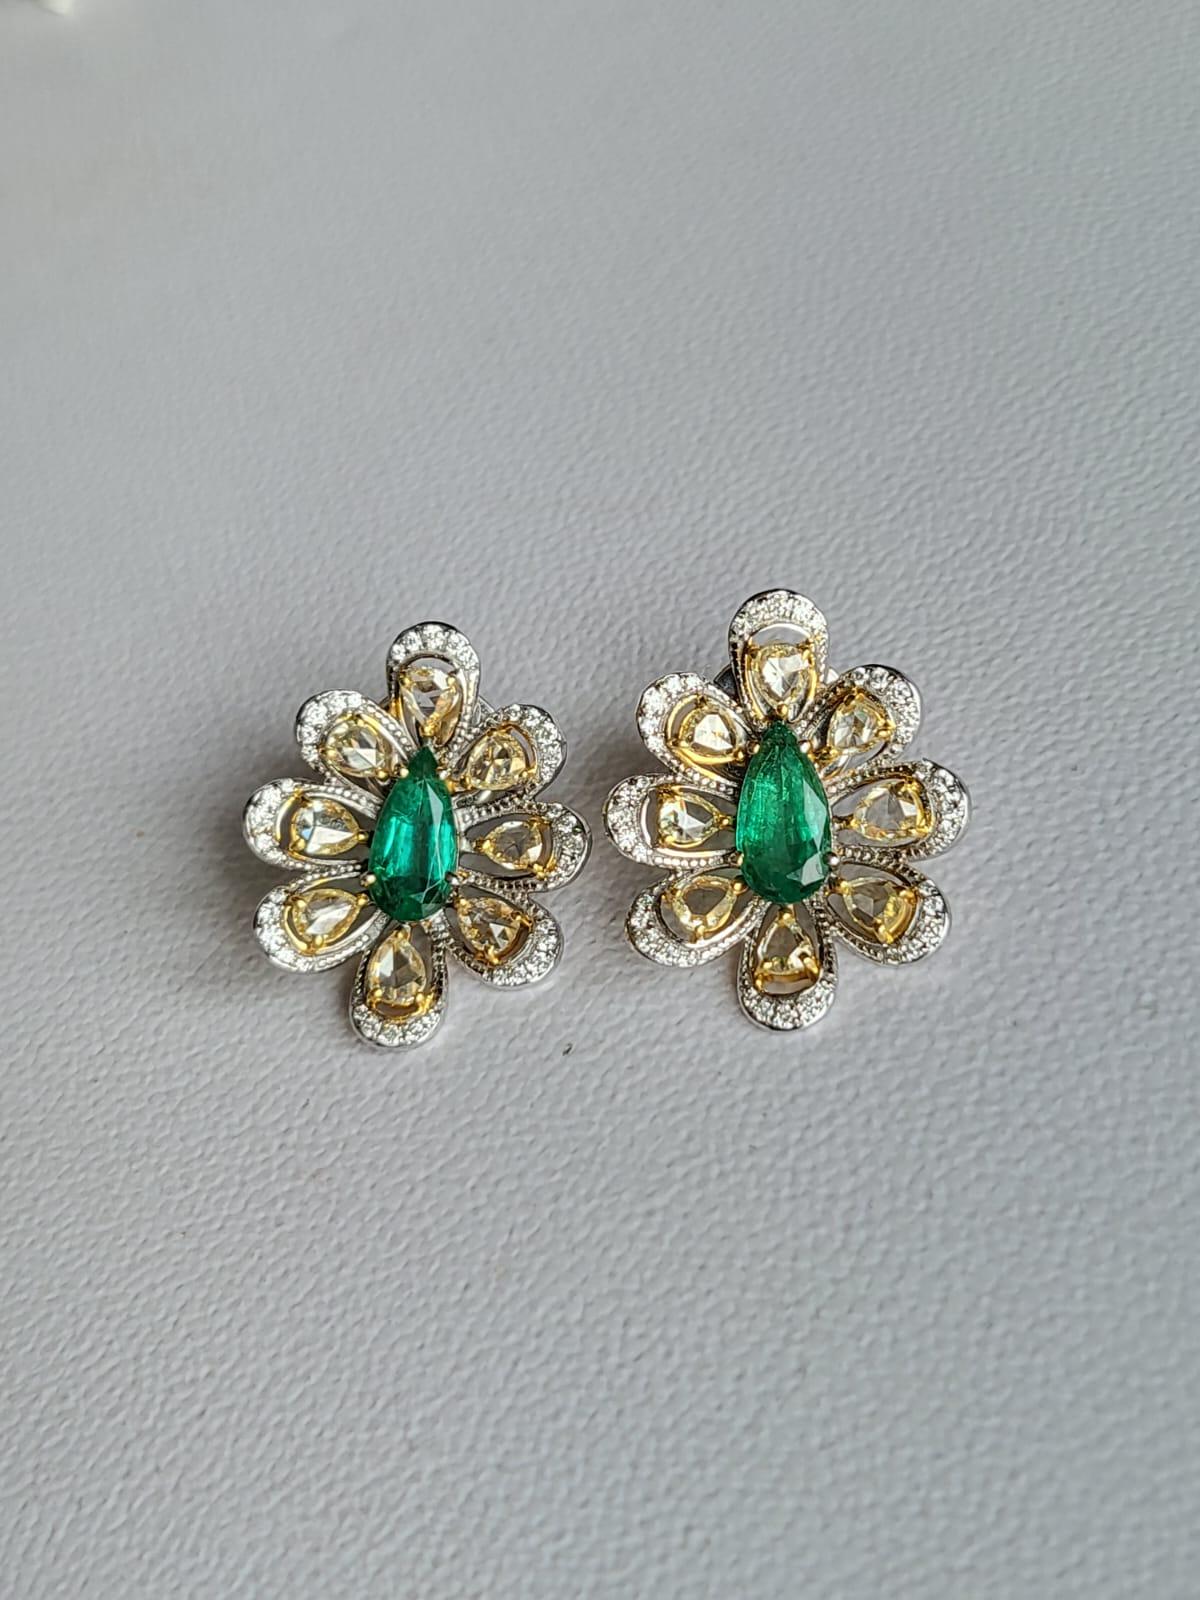 Women's or Men's Set in 18K Gold, 2.12 Carats, Zambian Emerald & Rose Cut Diamonds Stud Earrings For Sale